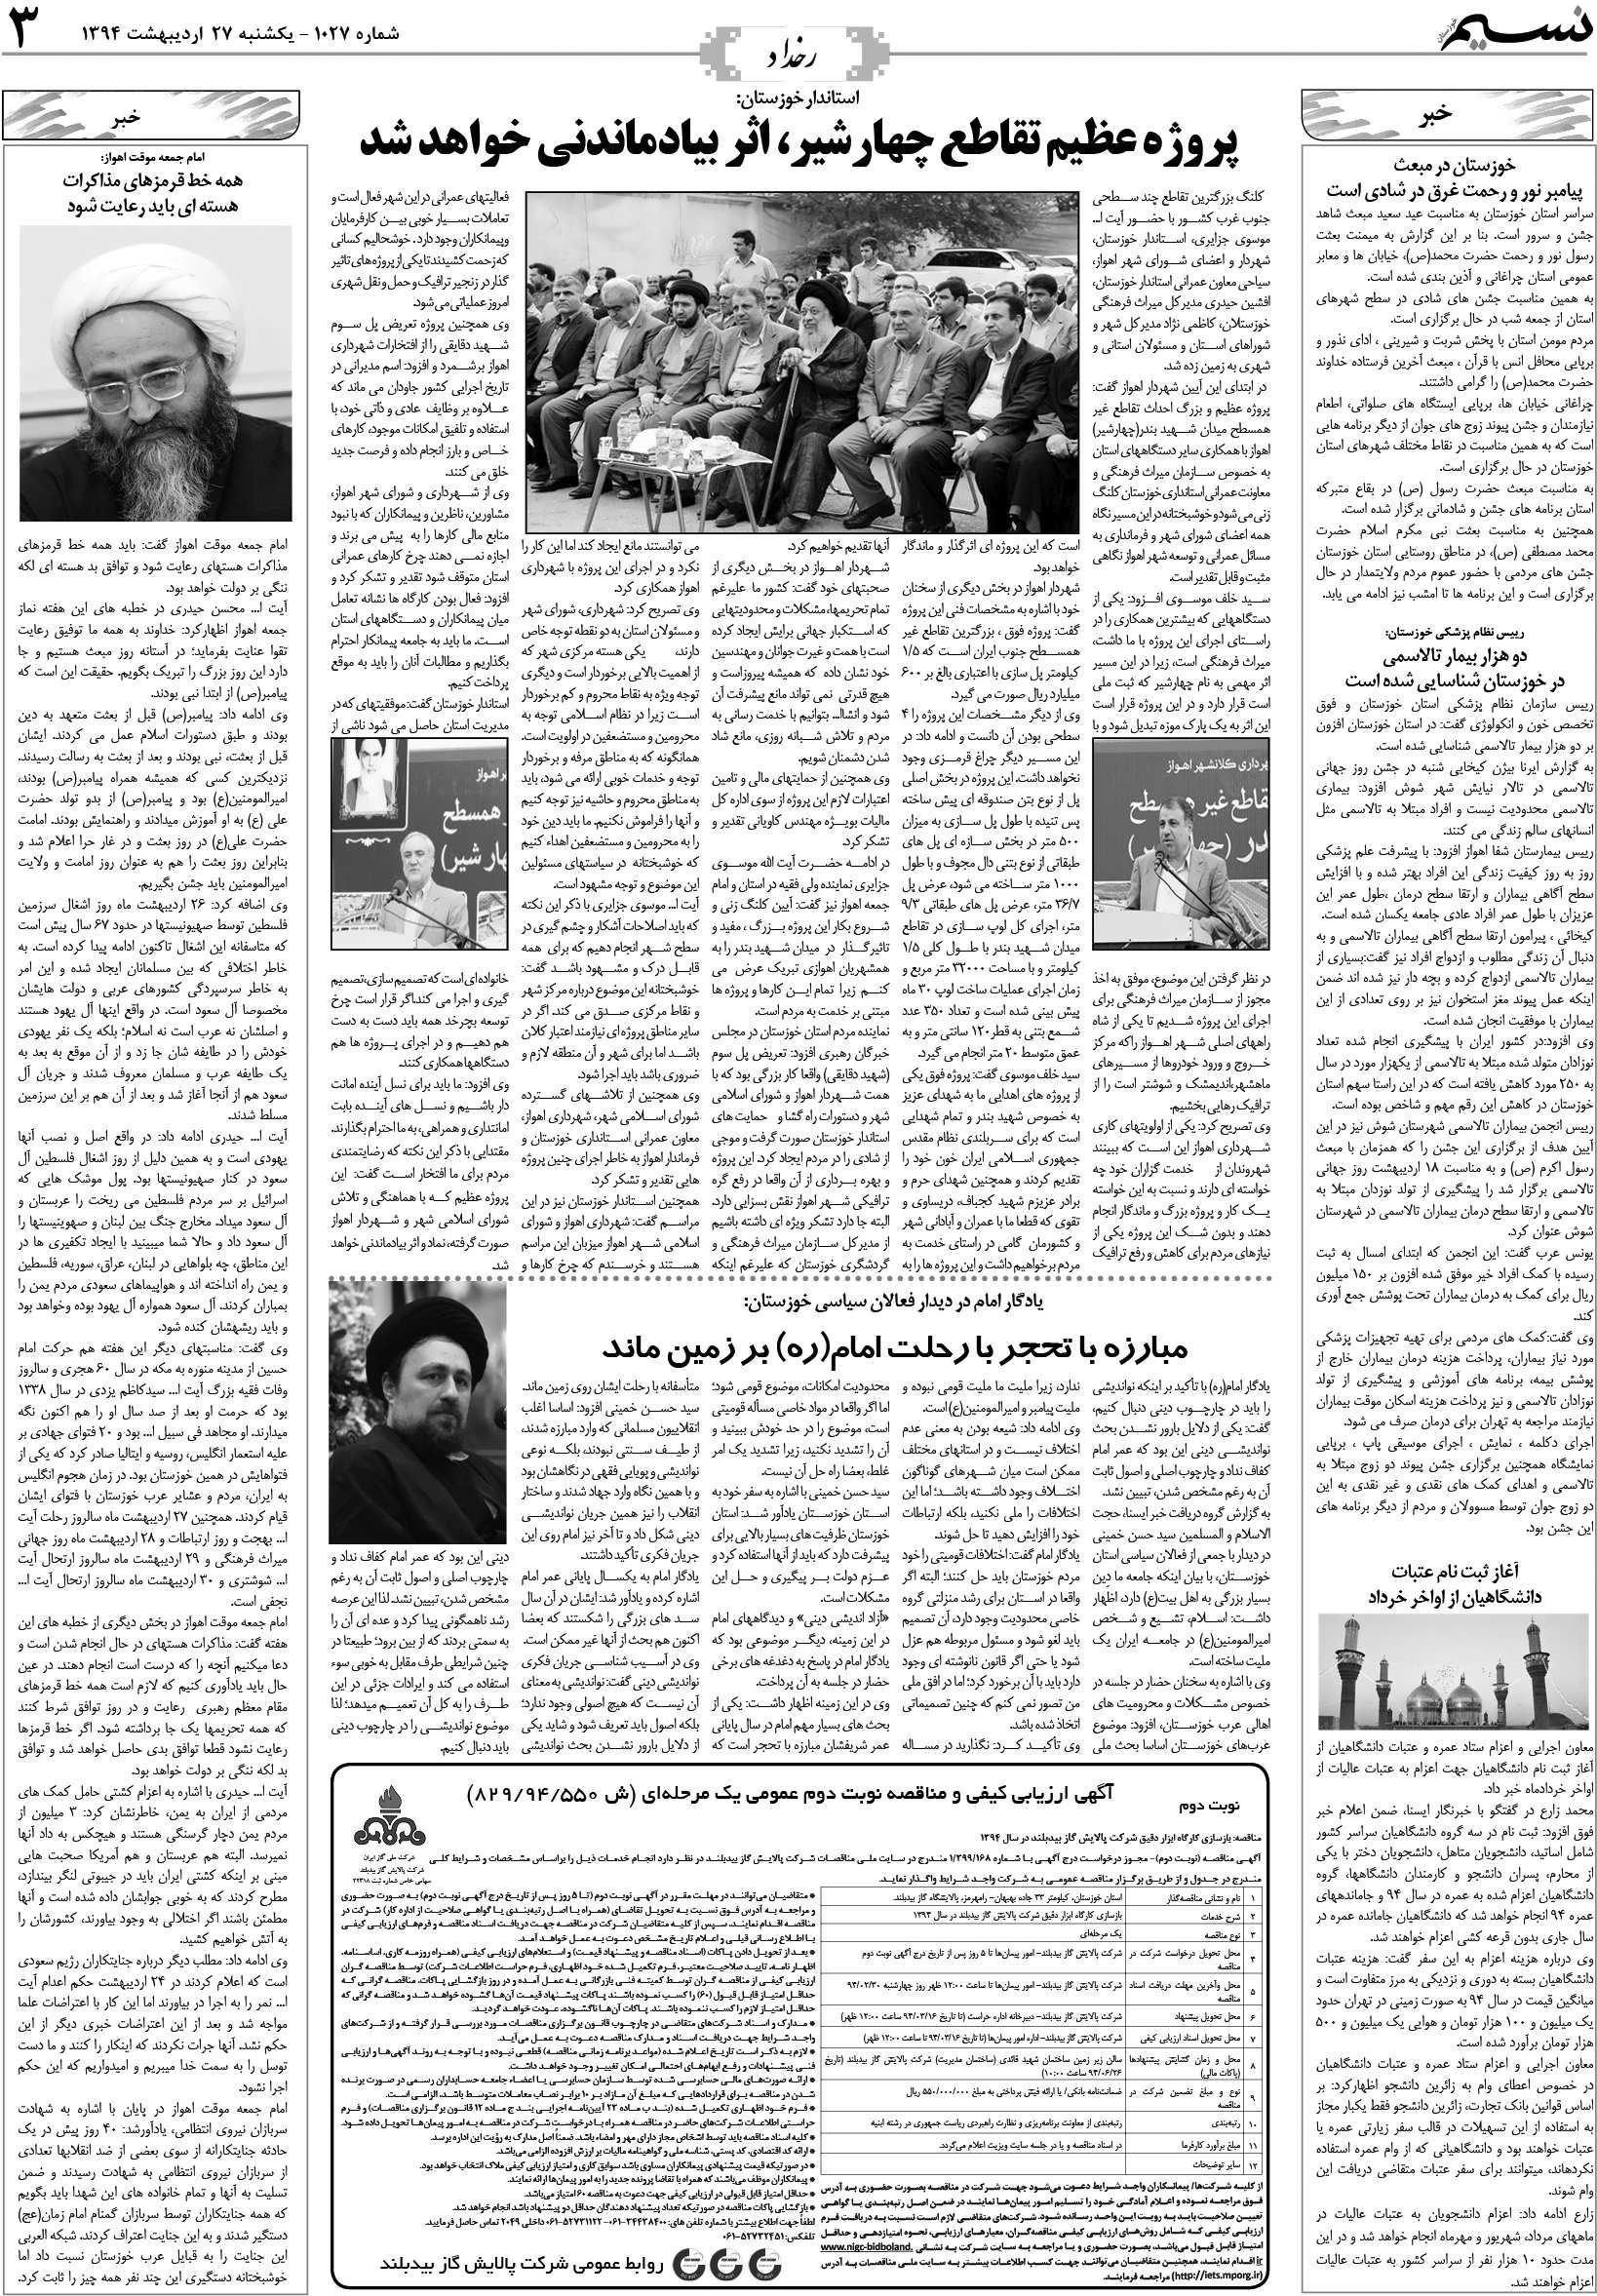 صفحه رخداد روزنامه نسیم شماره 1027